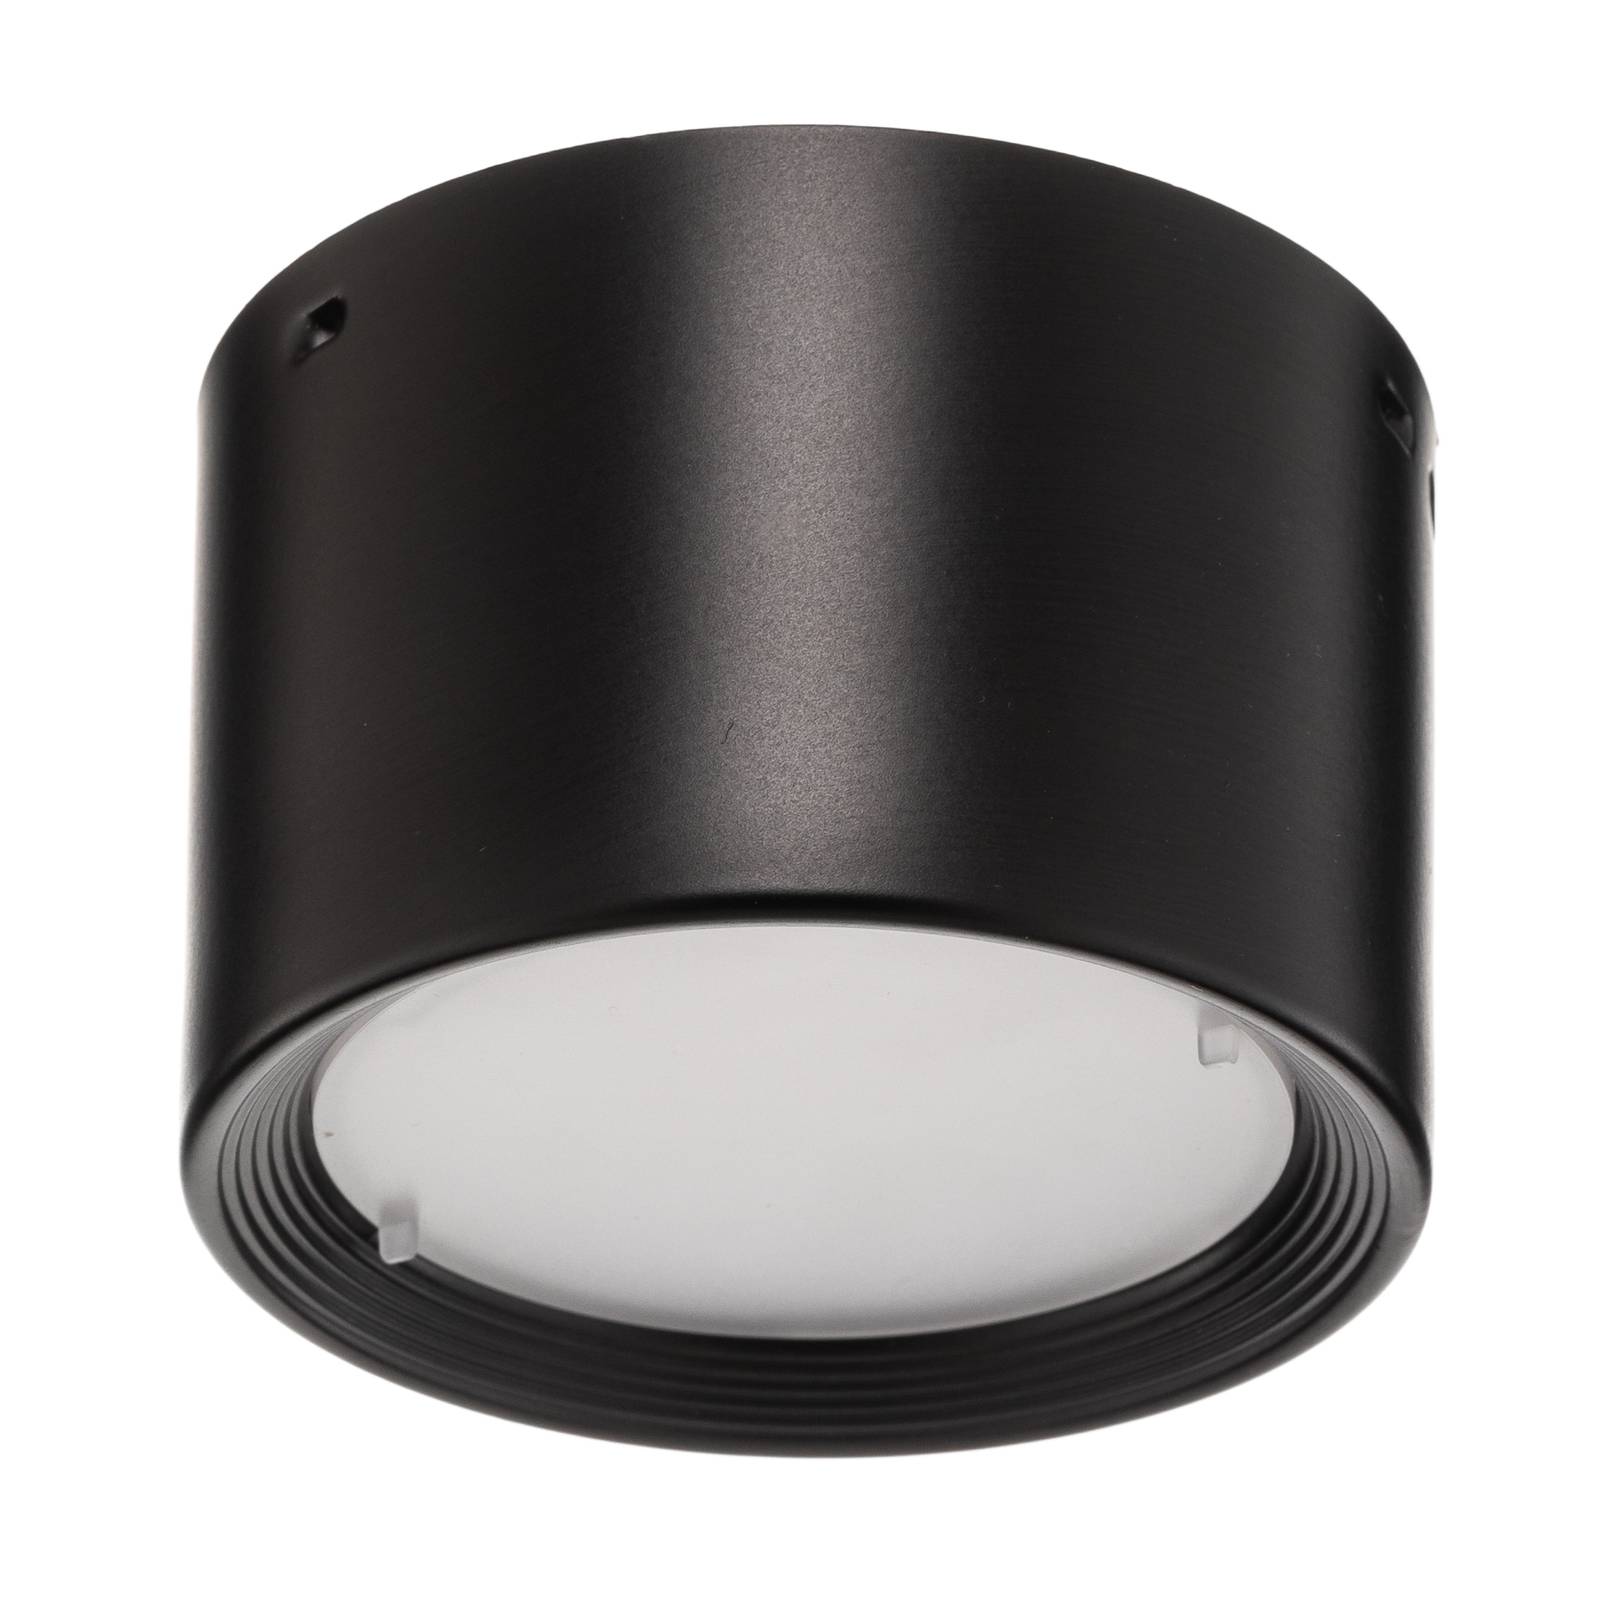 LED-downlight Ita i svart med diffusor Ø 8 cm